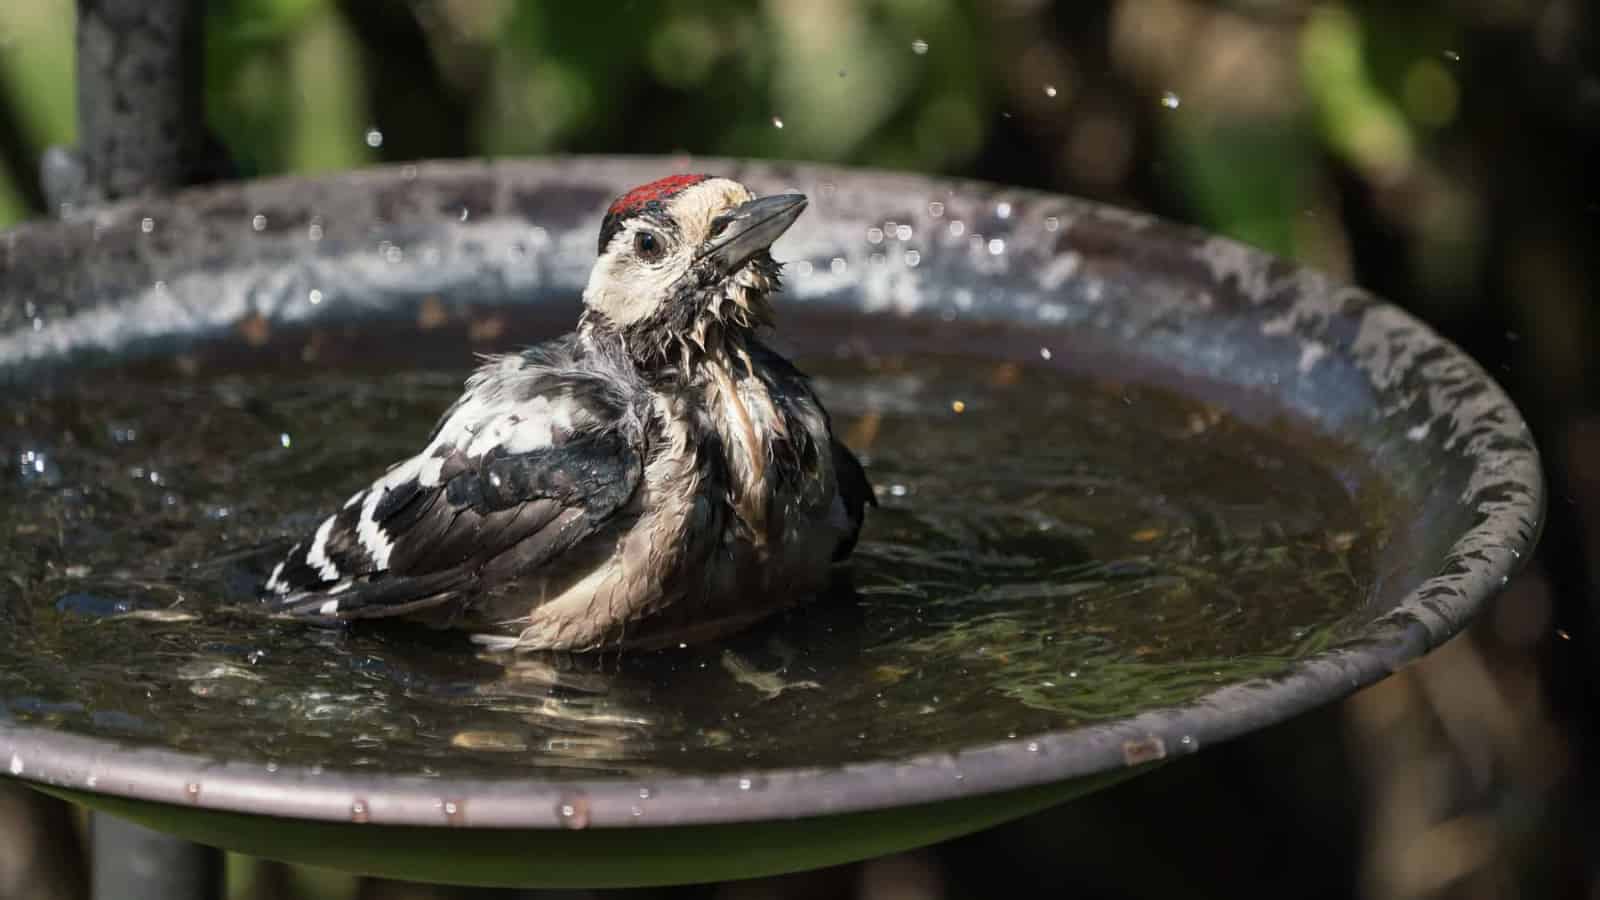 Great spotted woodpecker in birdbath